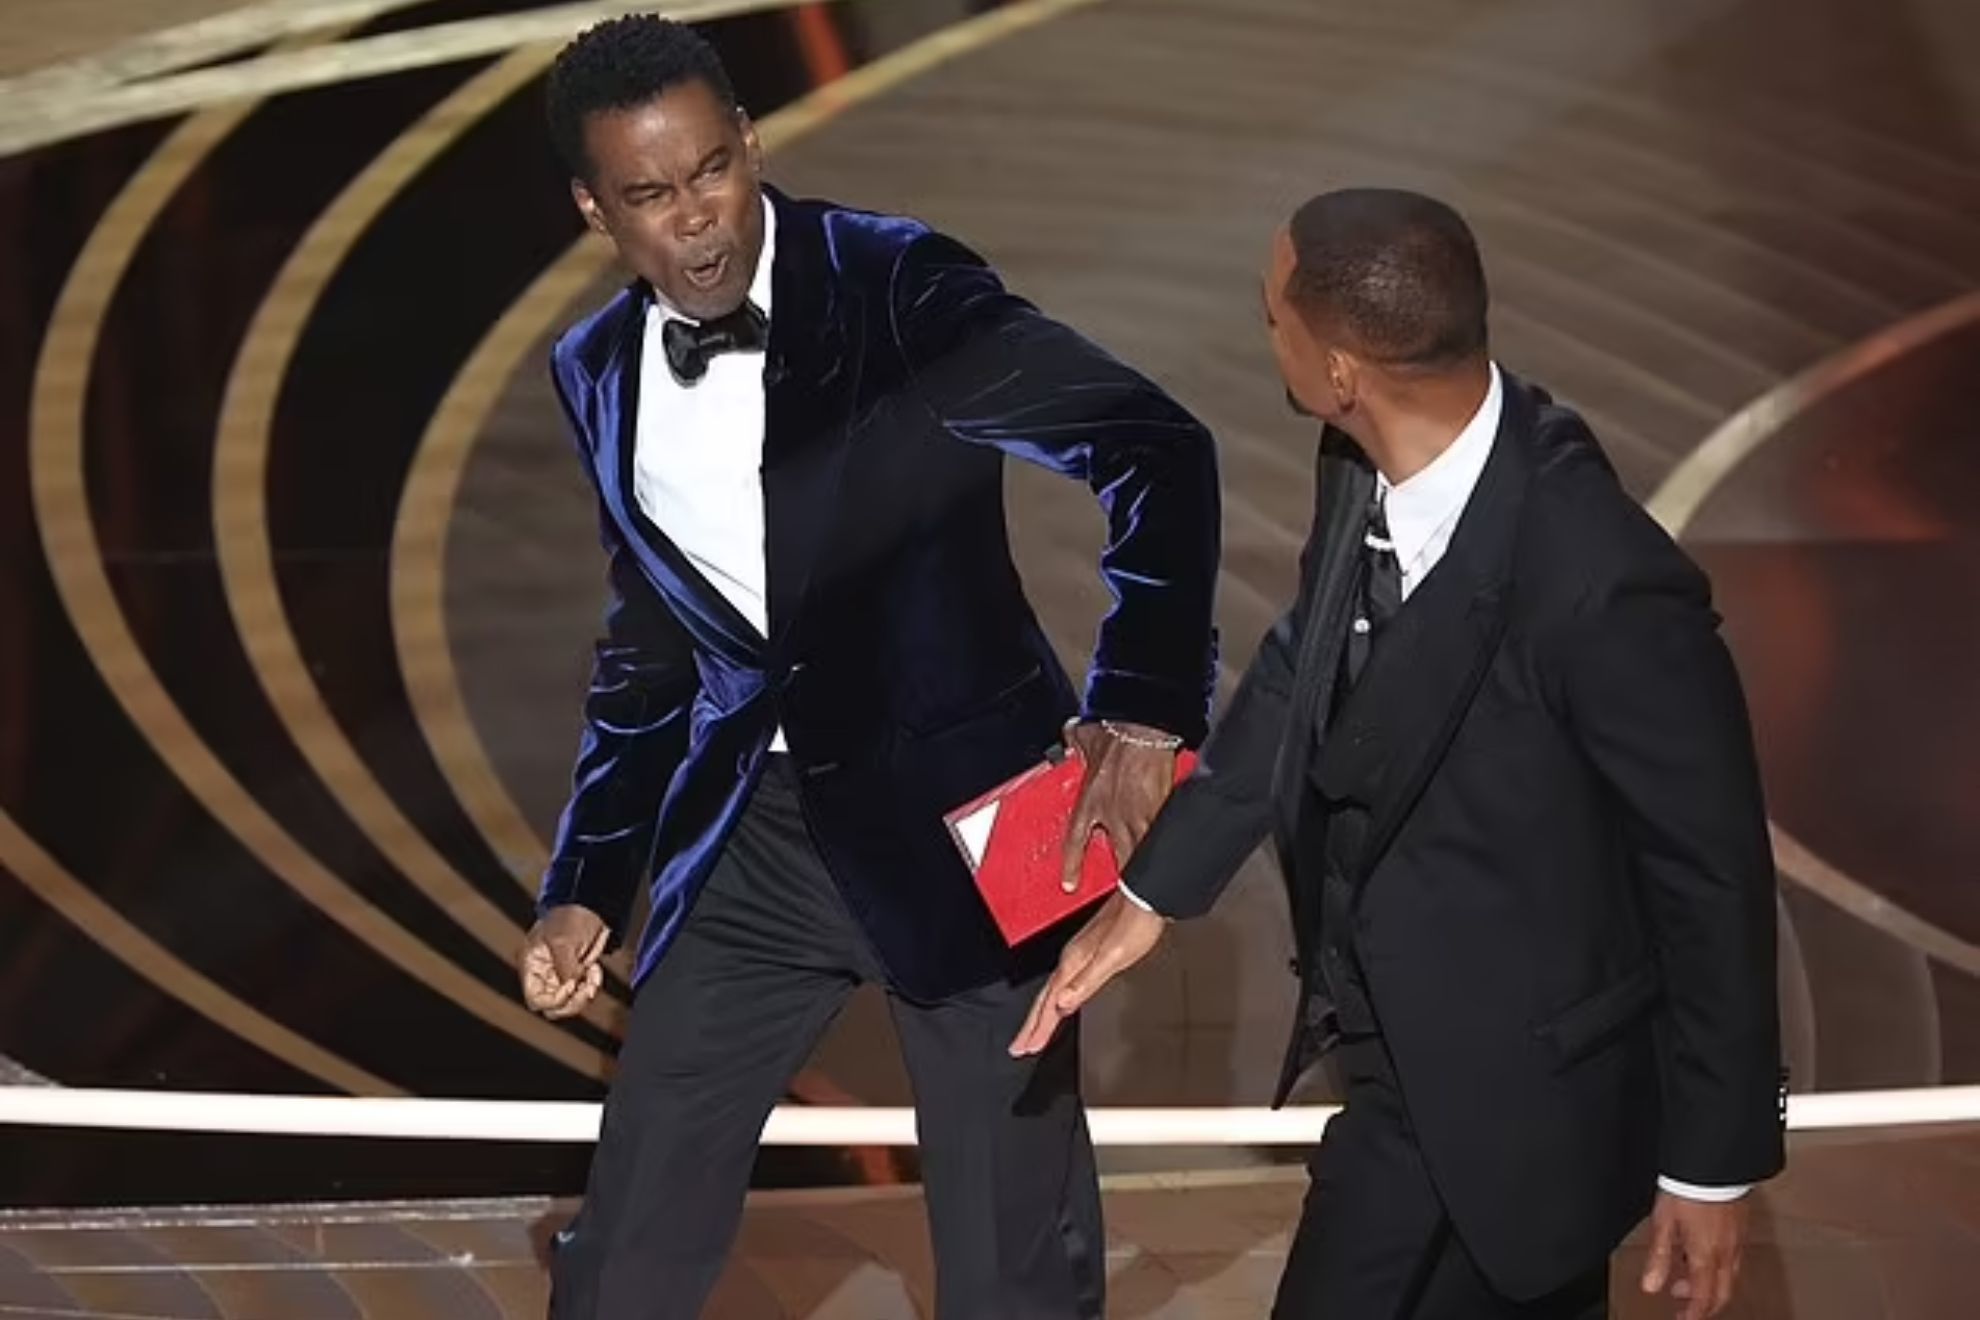 Chris Rock responder a la bofetada de Will Smith en un stand up de Netflix previo a los Oscar